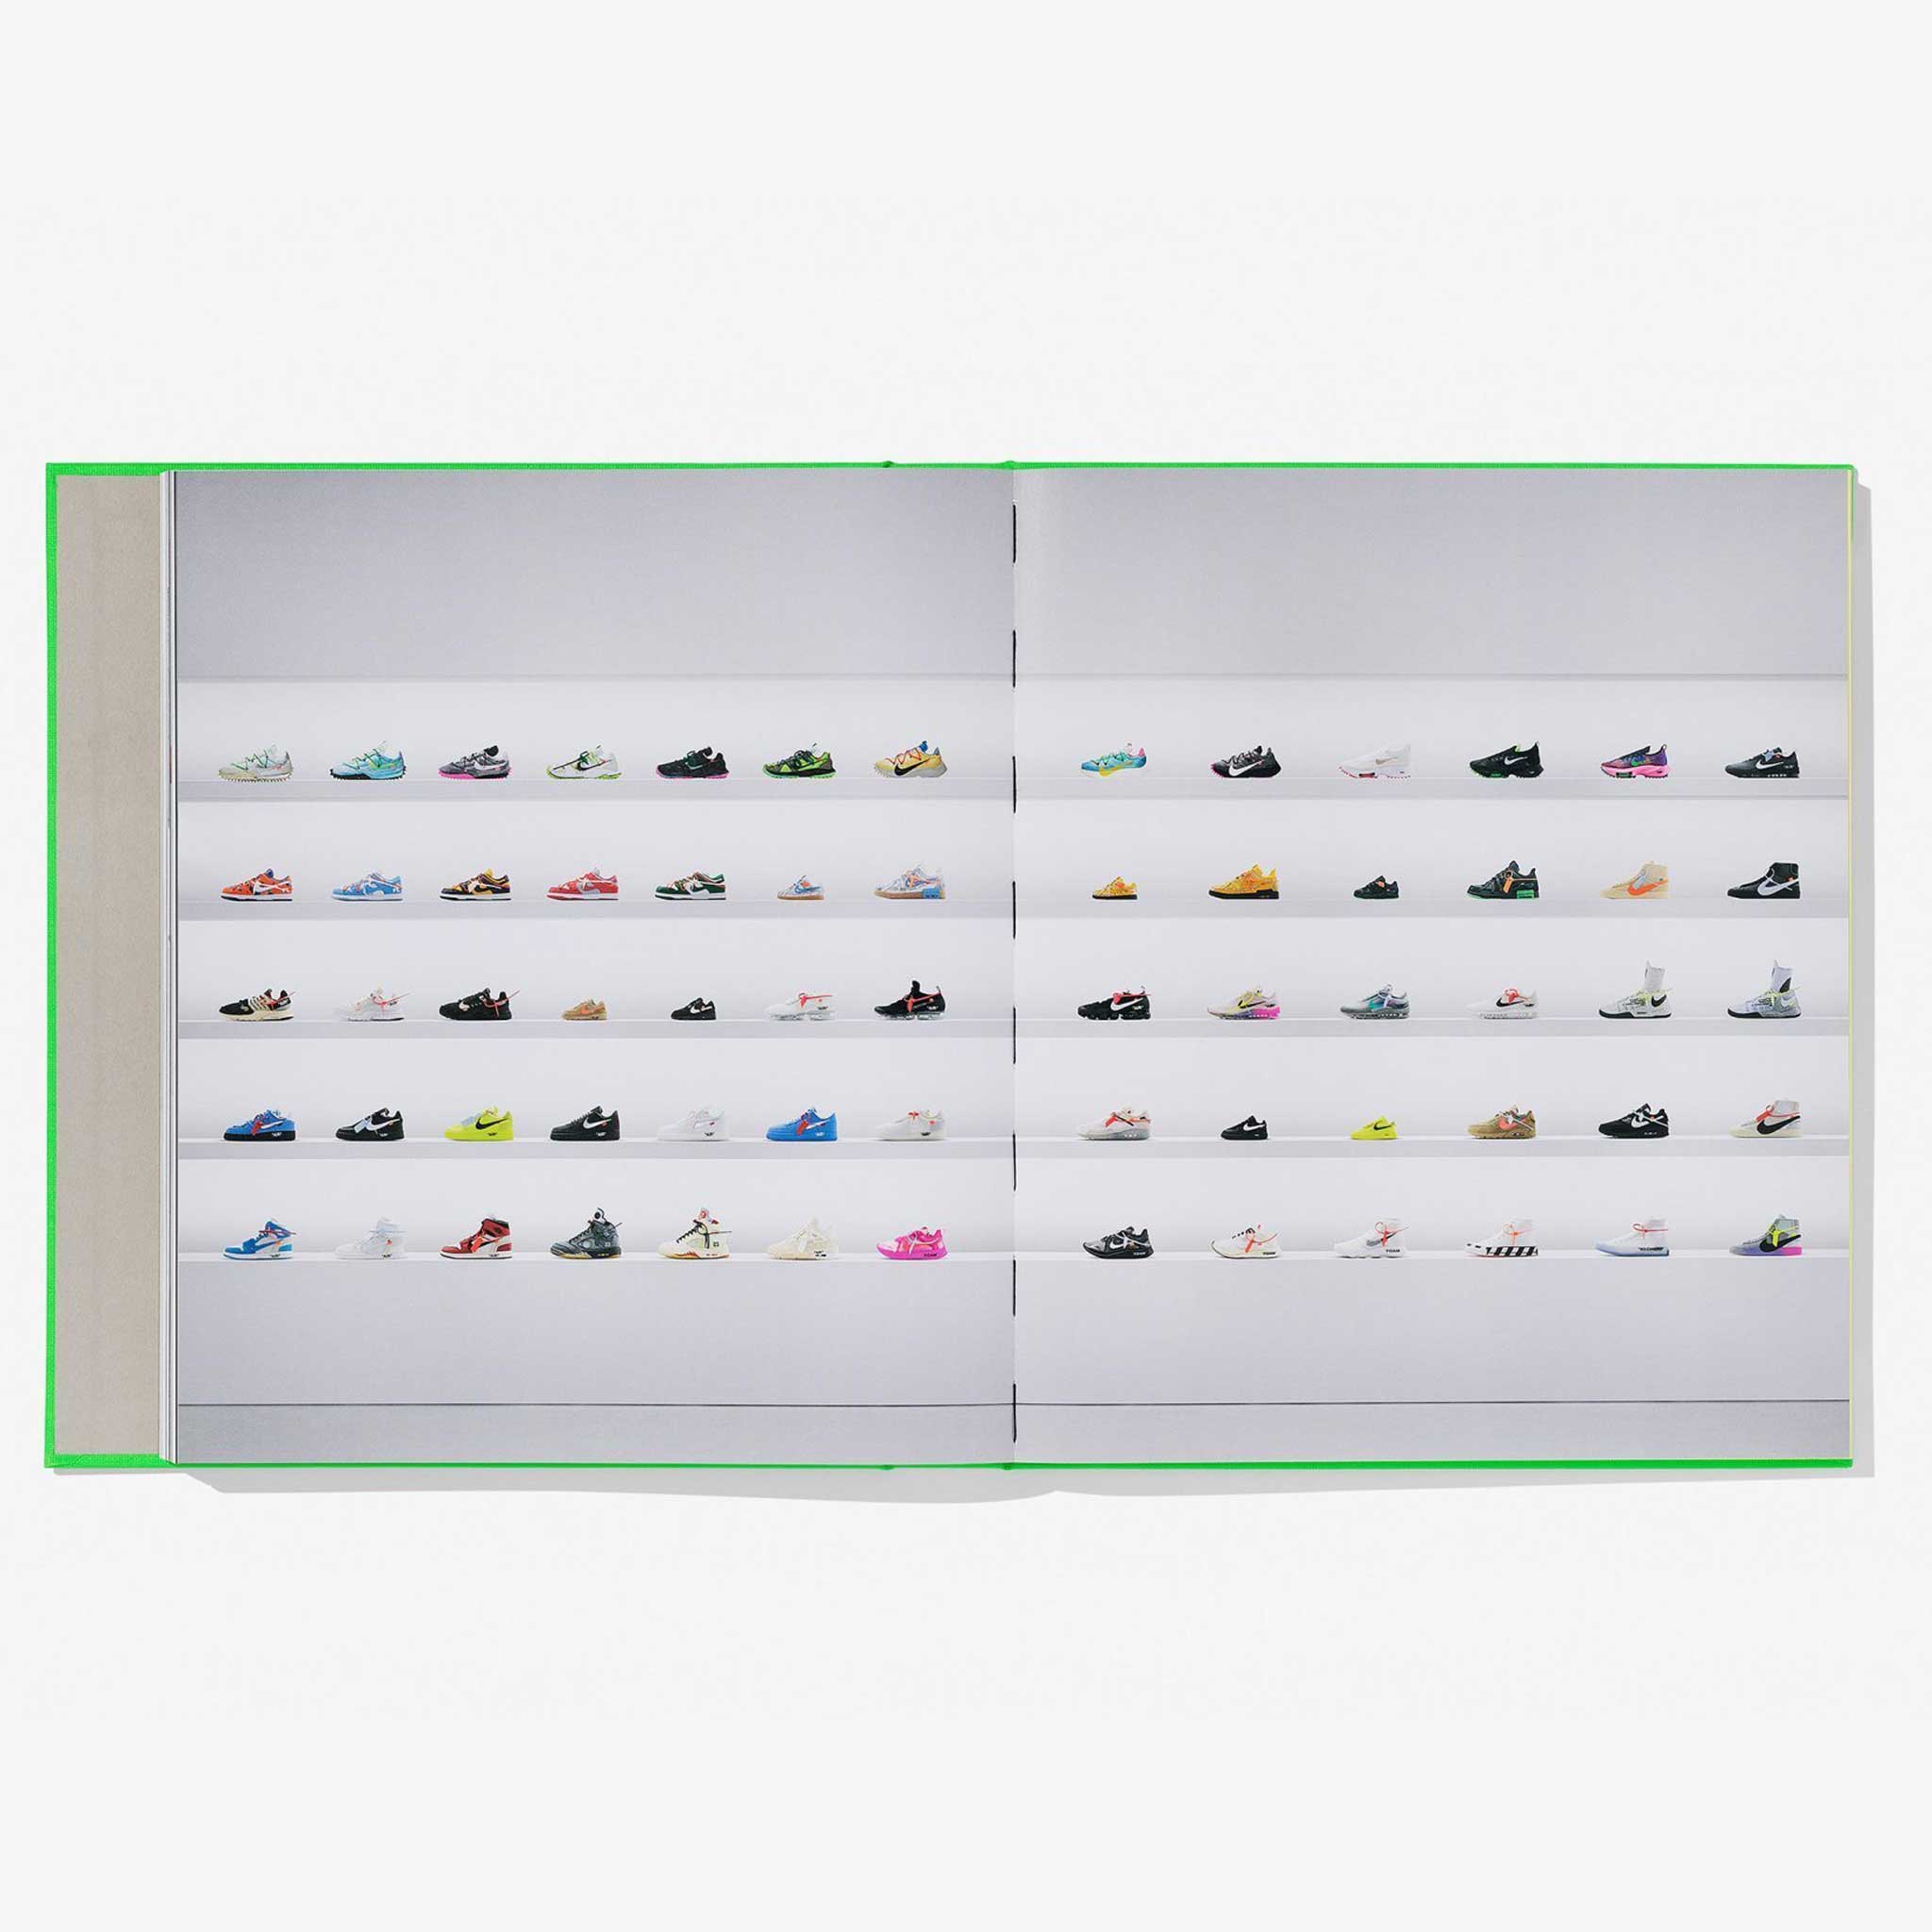 Virgil Abloh. Nike. ICONS | SNEAKER BOOK | Taschen Verlag